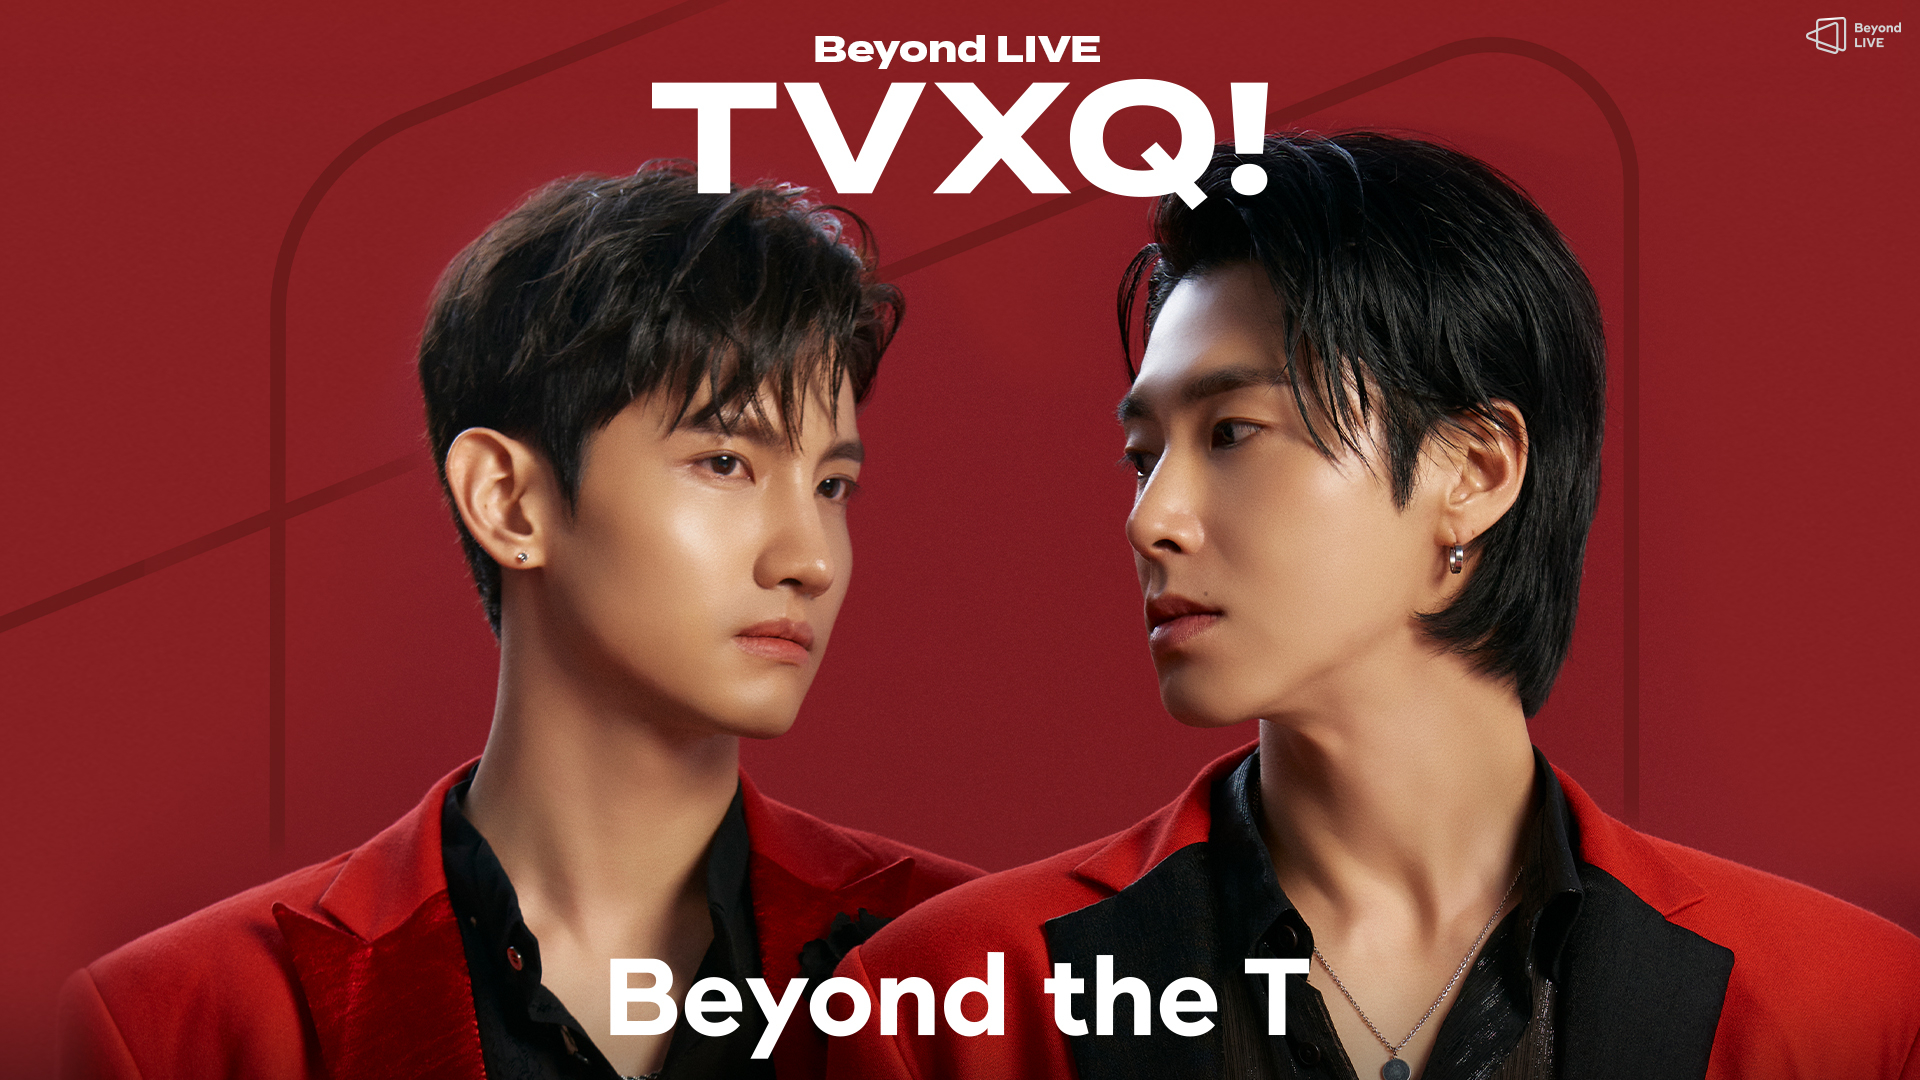 1920x1080 Beyond LIVE Beyond VOD TVXQ! : Beyond the T